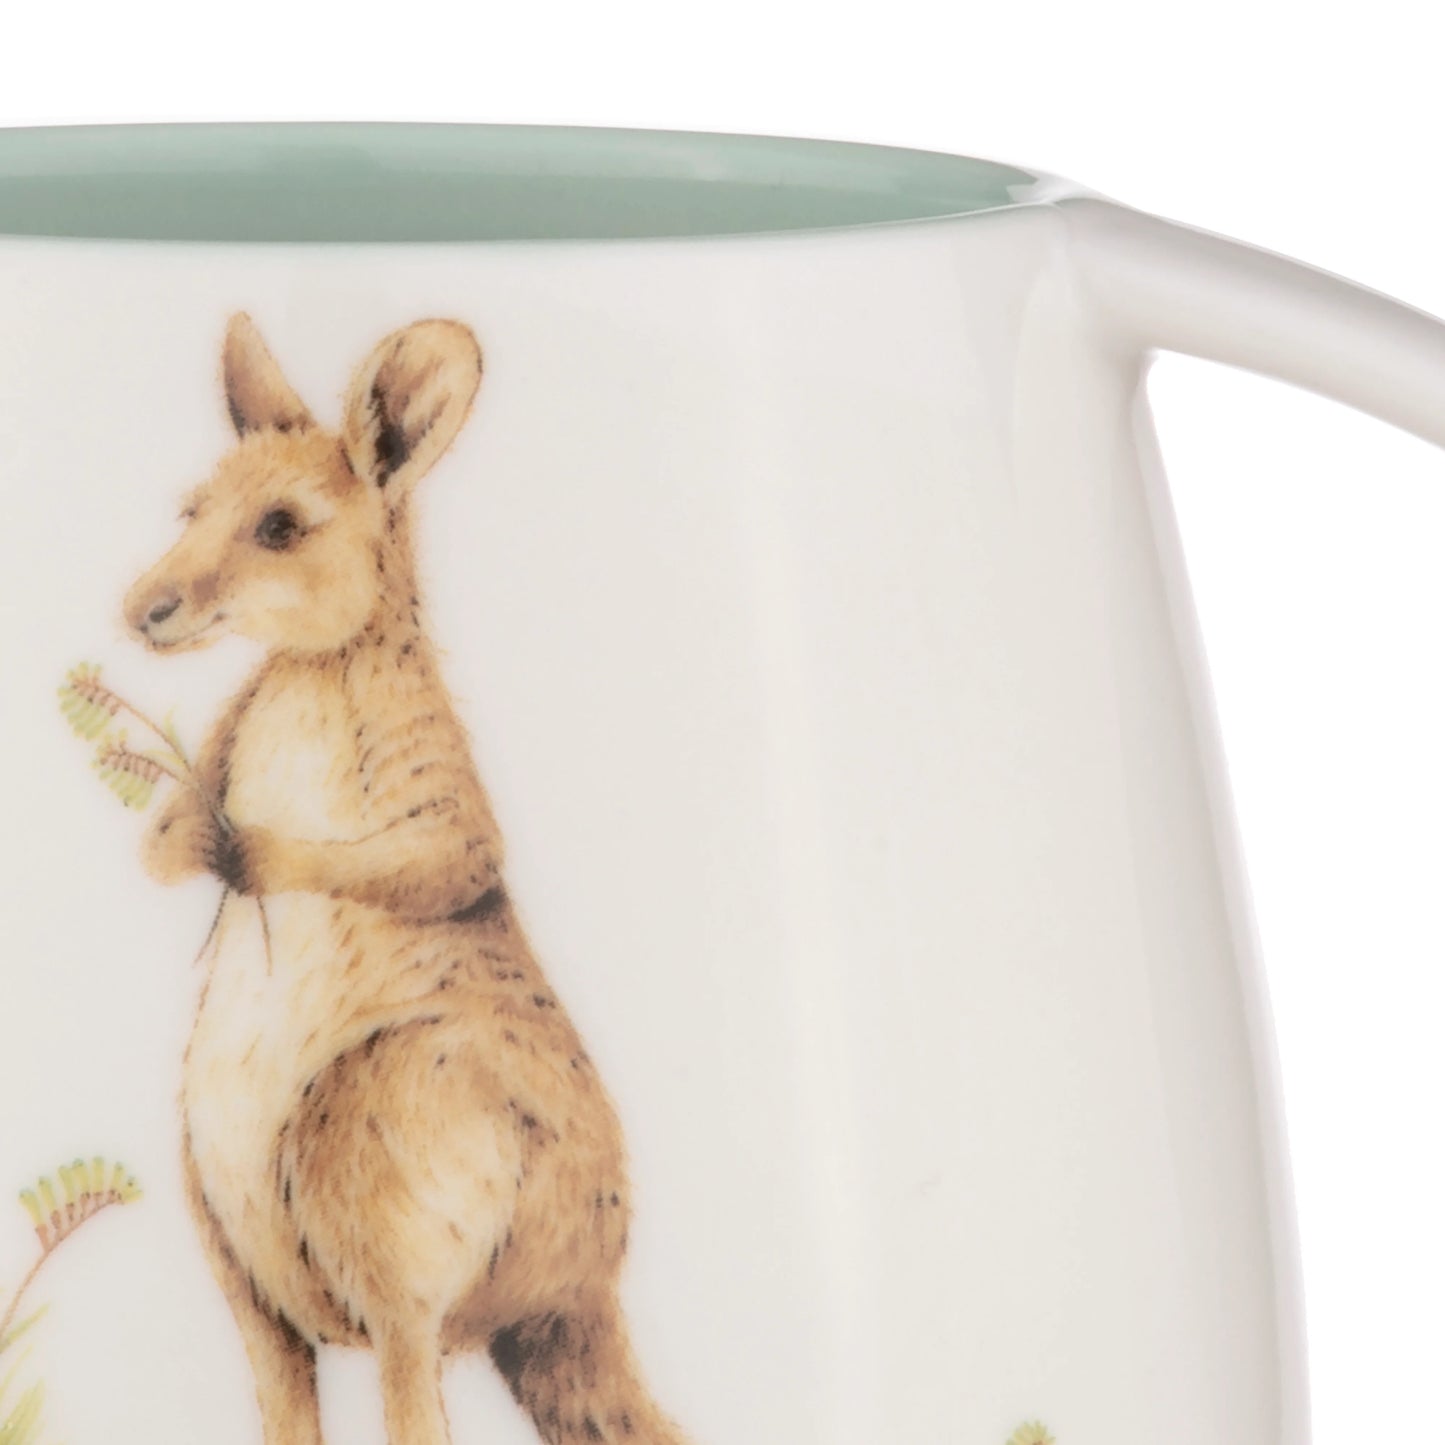 Ashdene Bush Buddies Snuggle Mug - Kangaroo